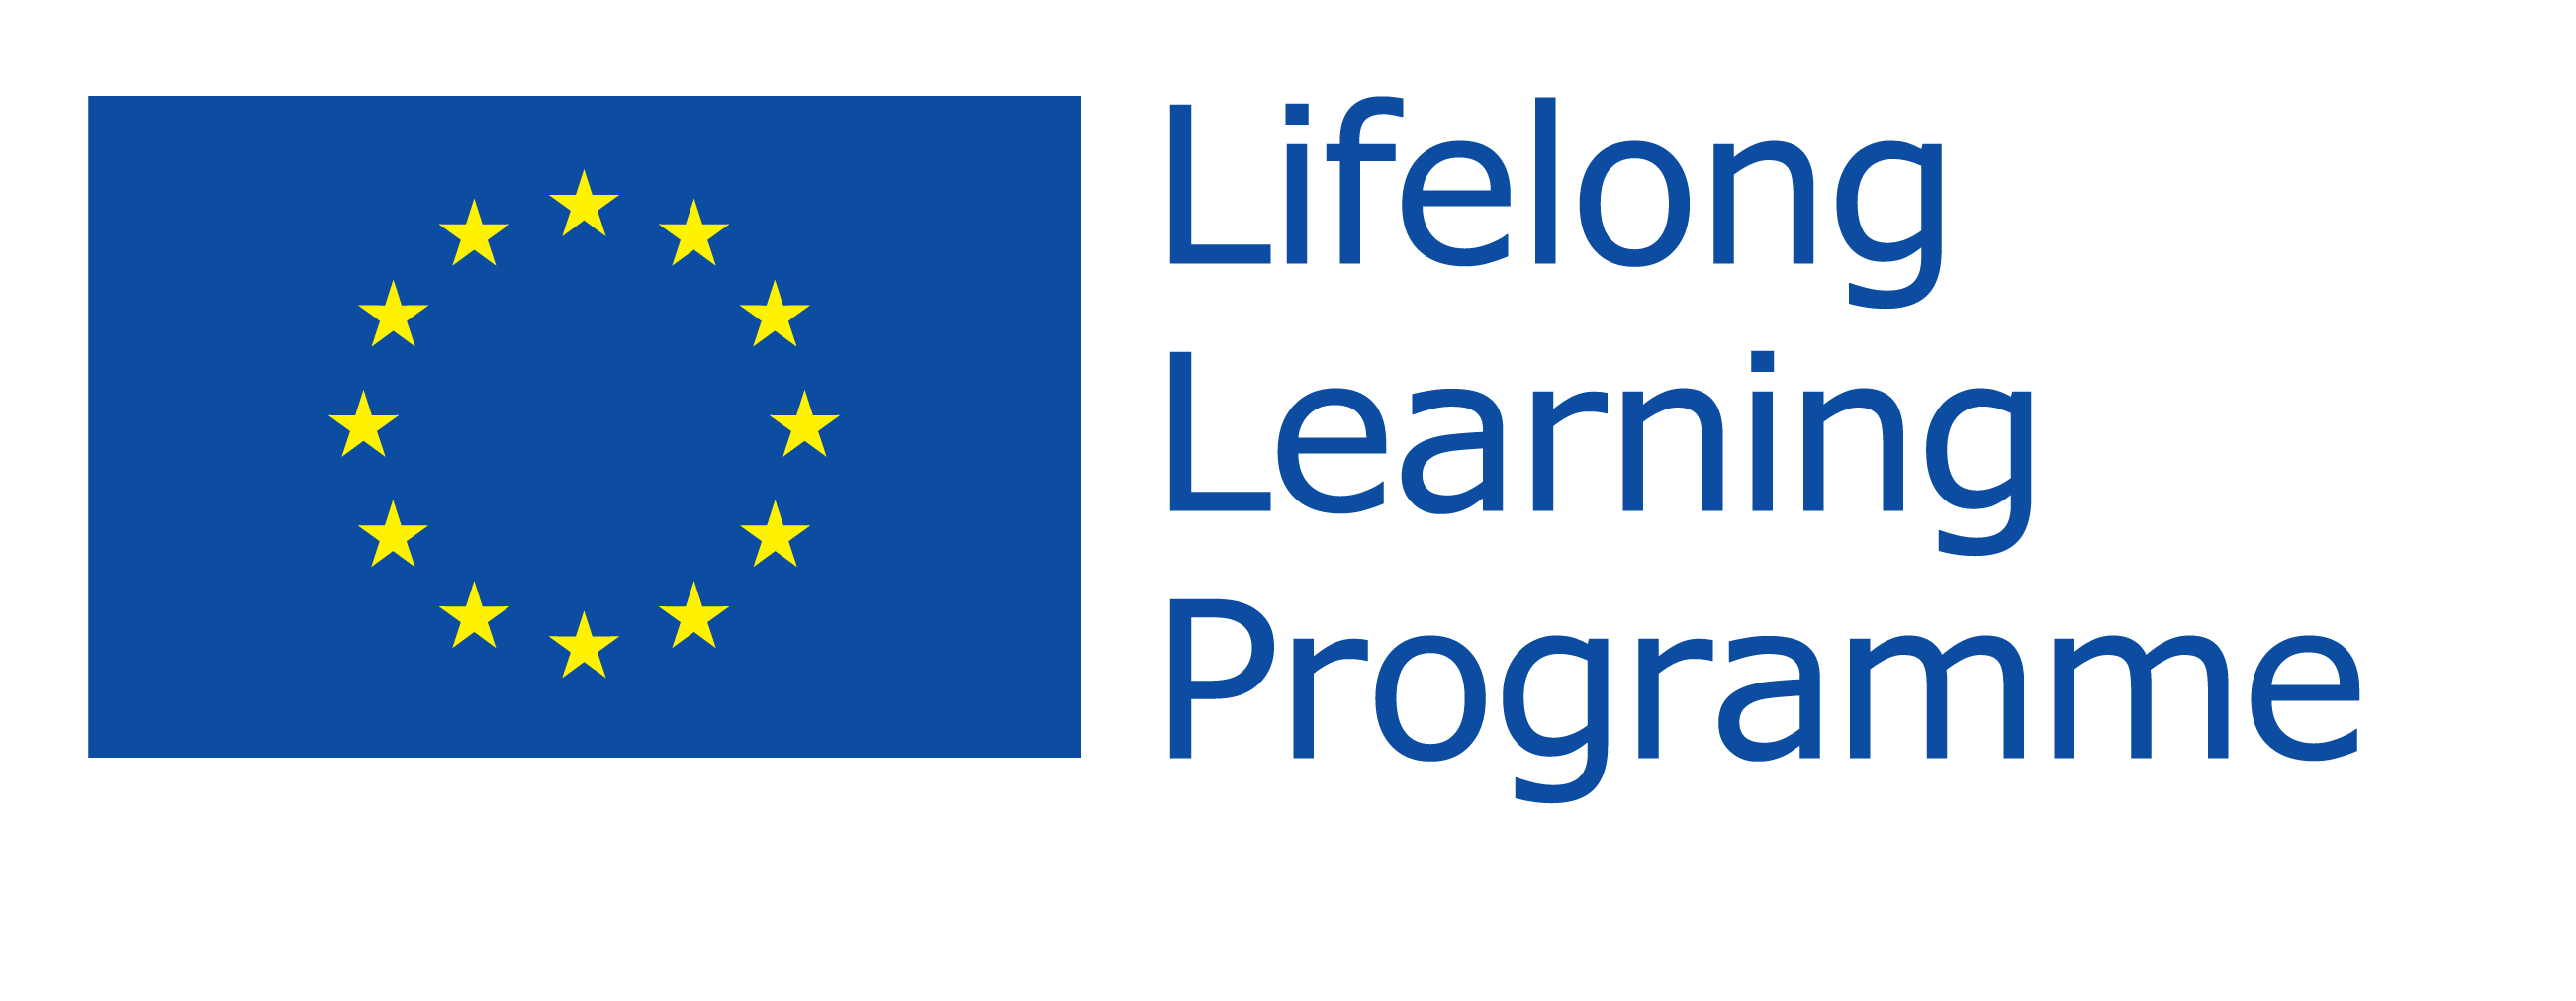 EU Lifelong Learning Programme logo